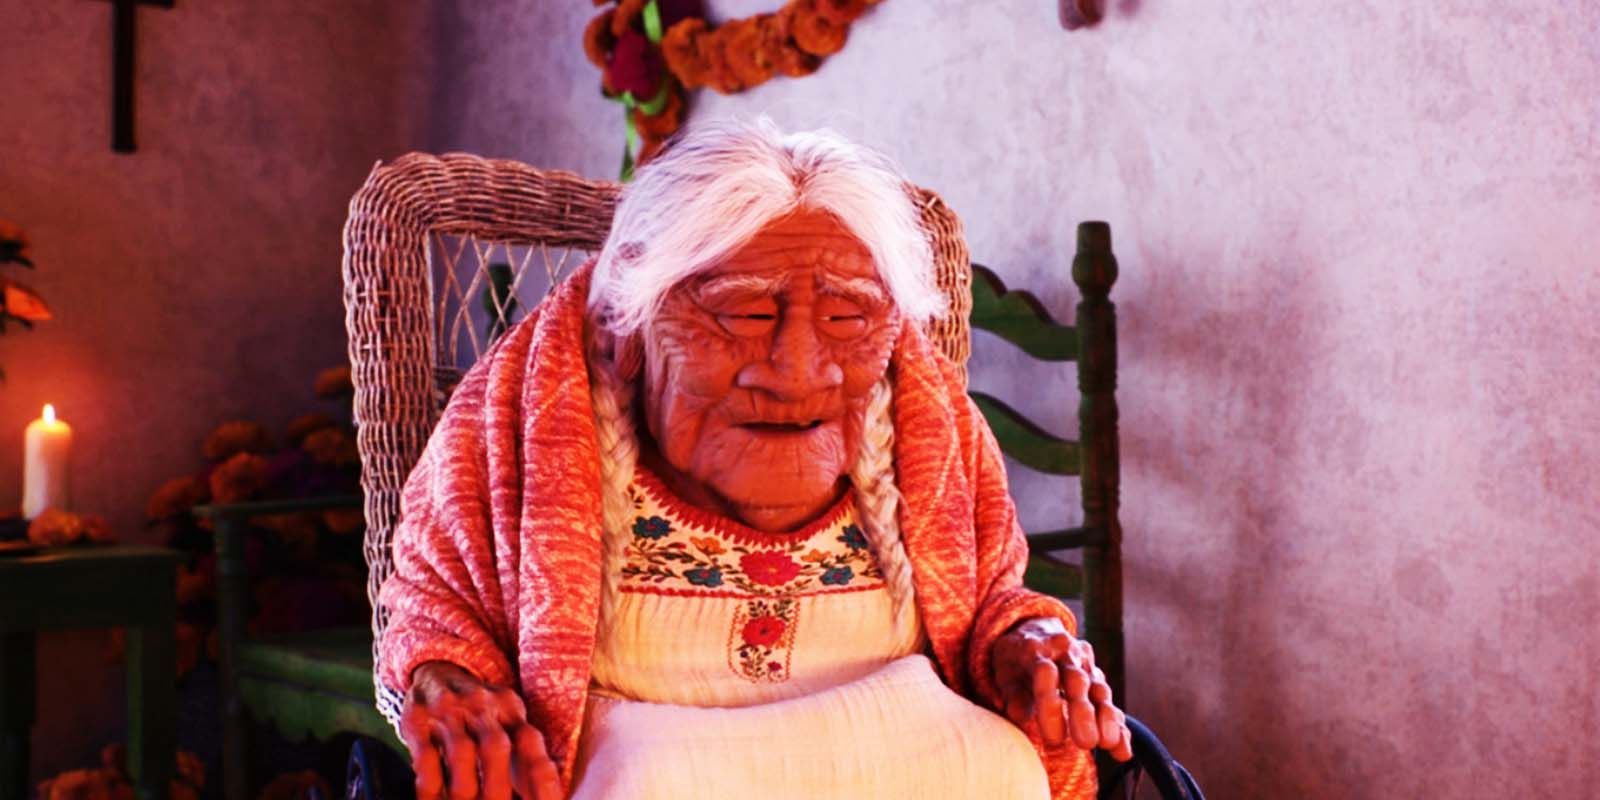 Ana Ofelia Murguía, Coco Voice Actor, Dies At 90